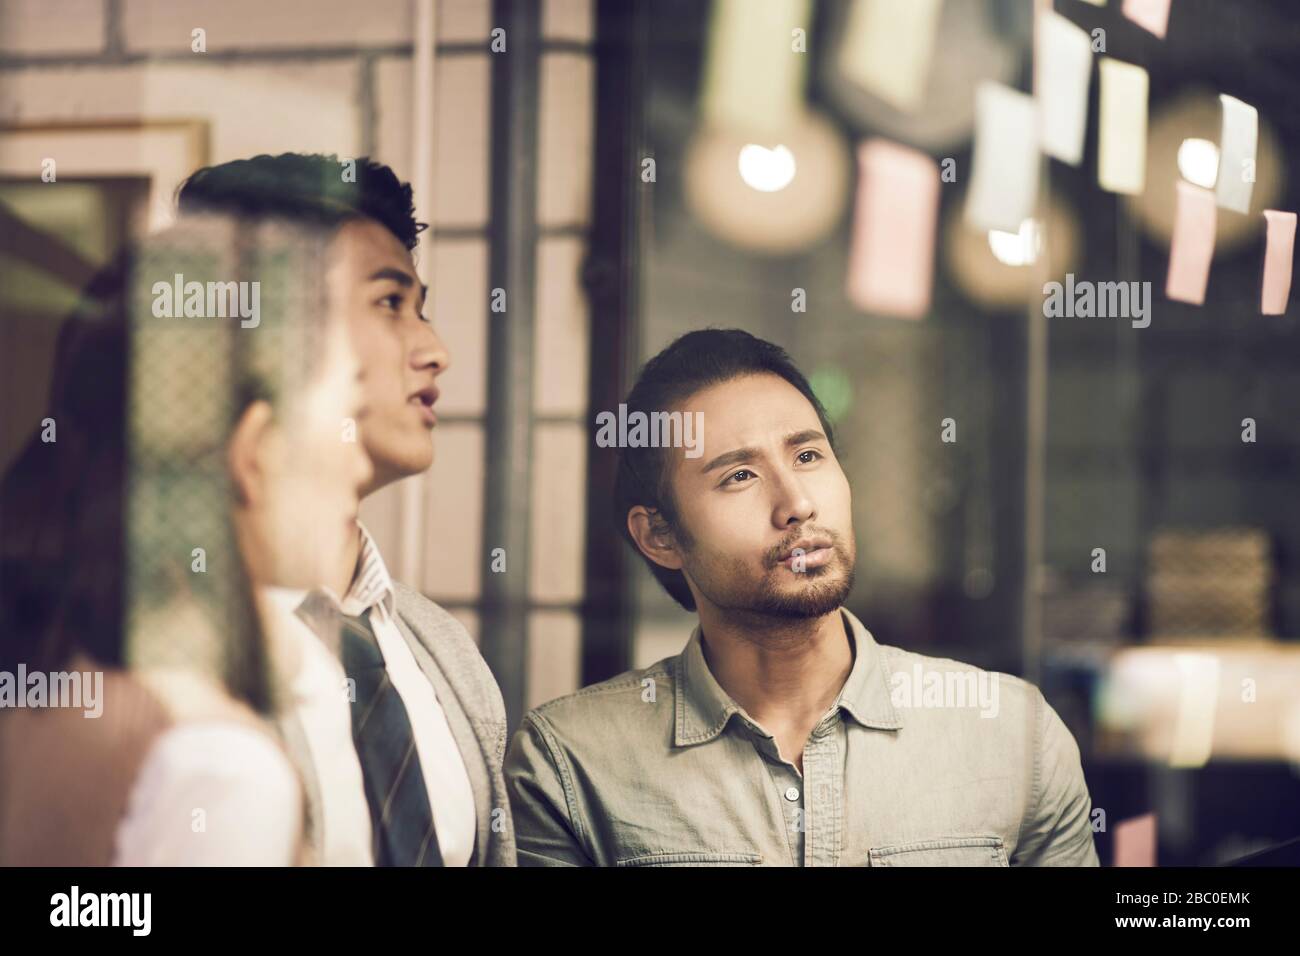 tre imprenditori asiatici di piccola impresa giovani imprenditori che meeing discutere in ufficio utilizzando le note adesive Foto Stock